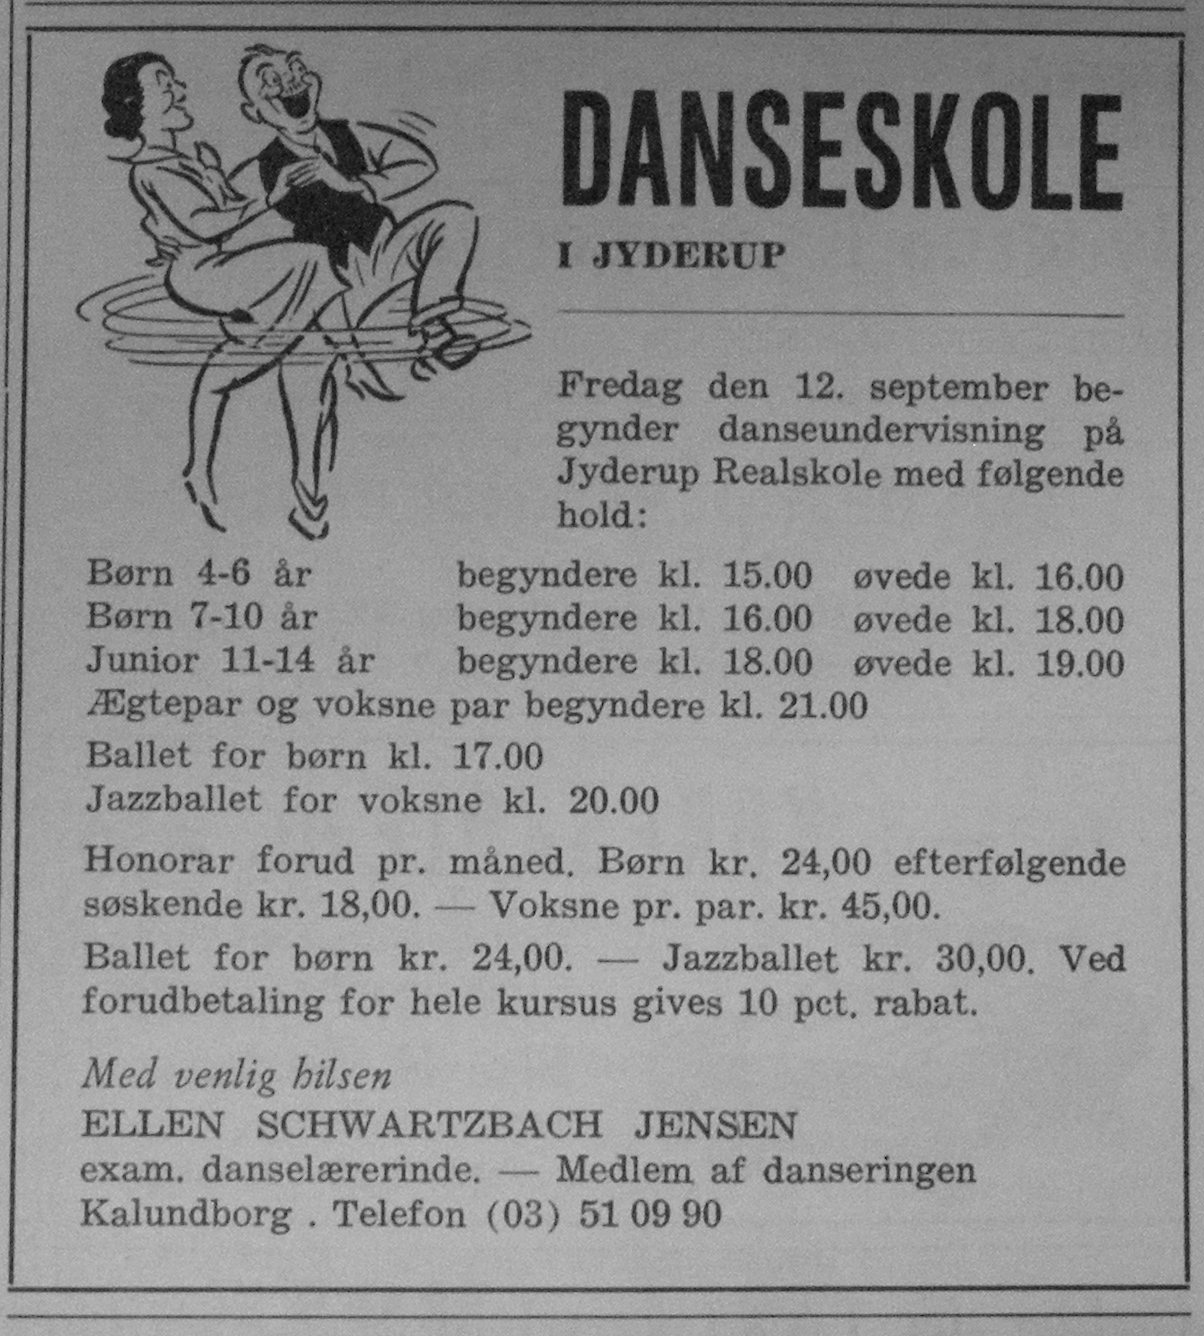 Annonce for aktivitet for Jyderup Realskole 1969